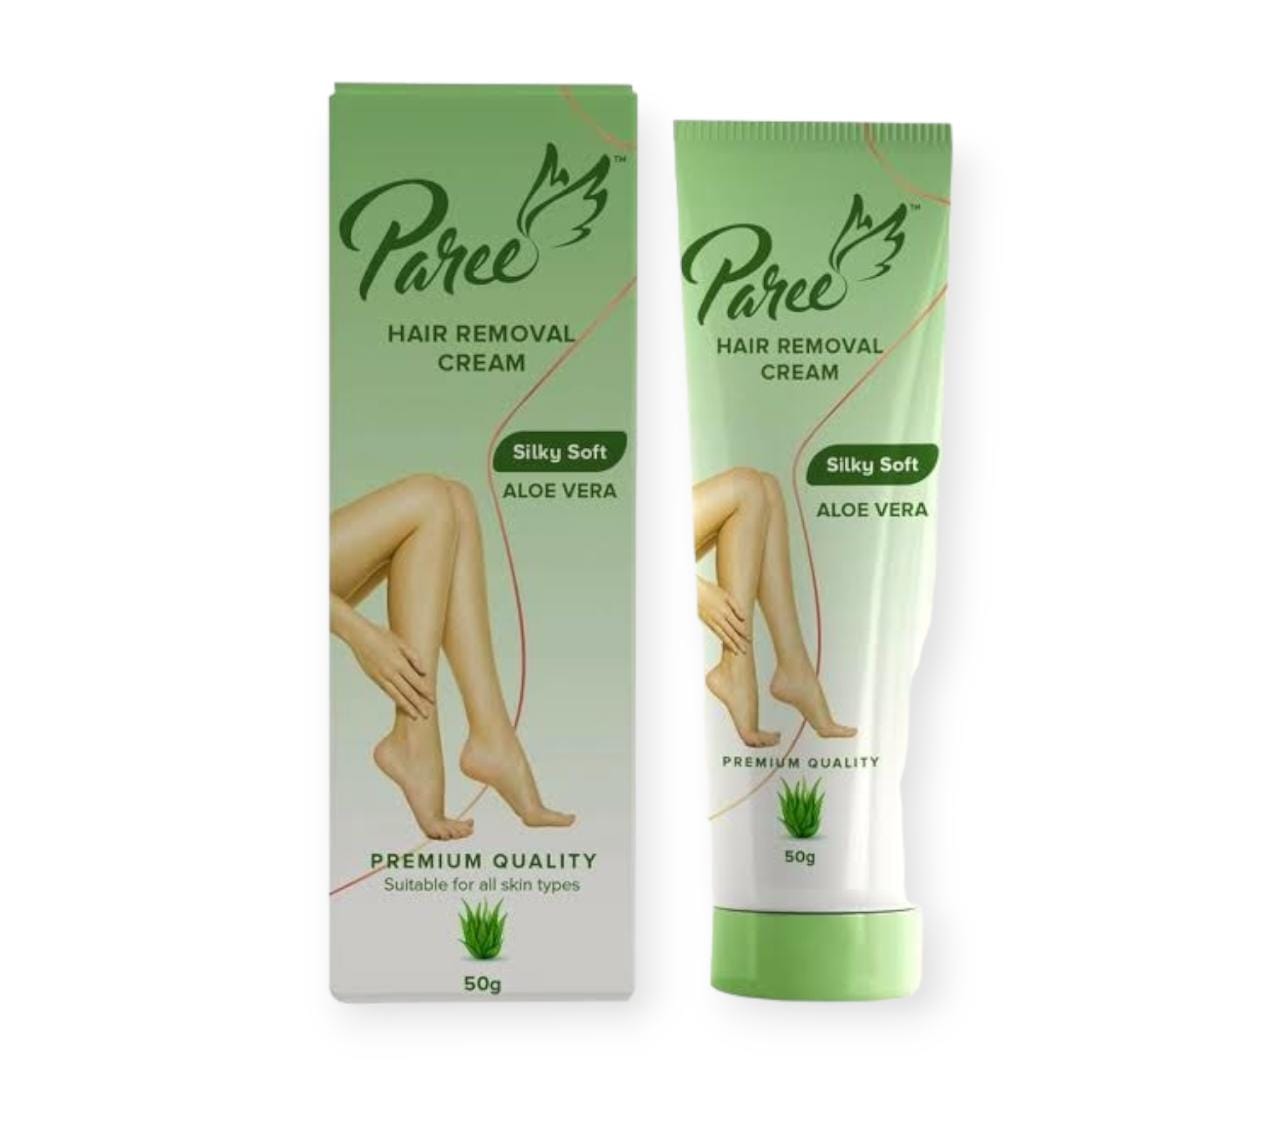 Paree Aloe vera hair removal cream 